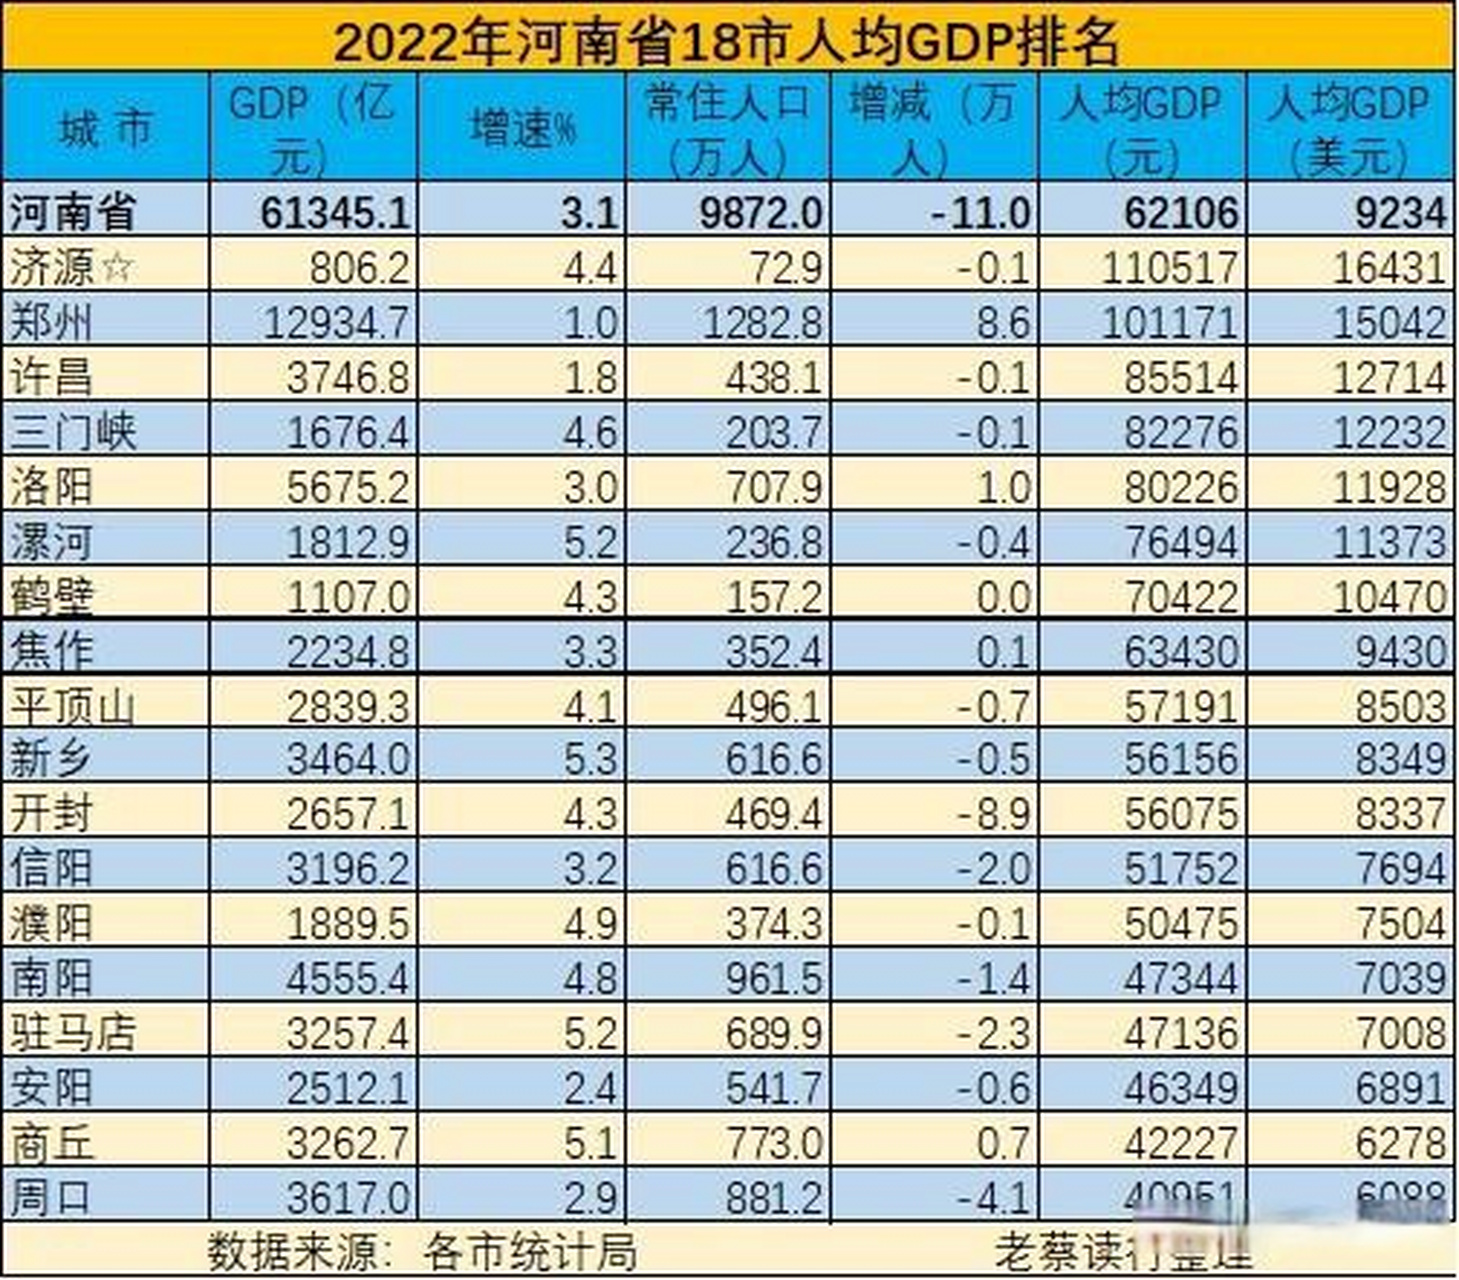 1万元,排名第一;郑州市gdp超万亿,常住人口超1000万,均排名第一,人均